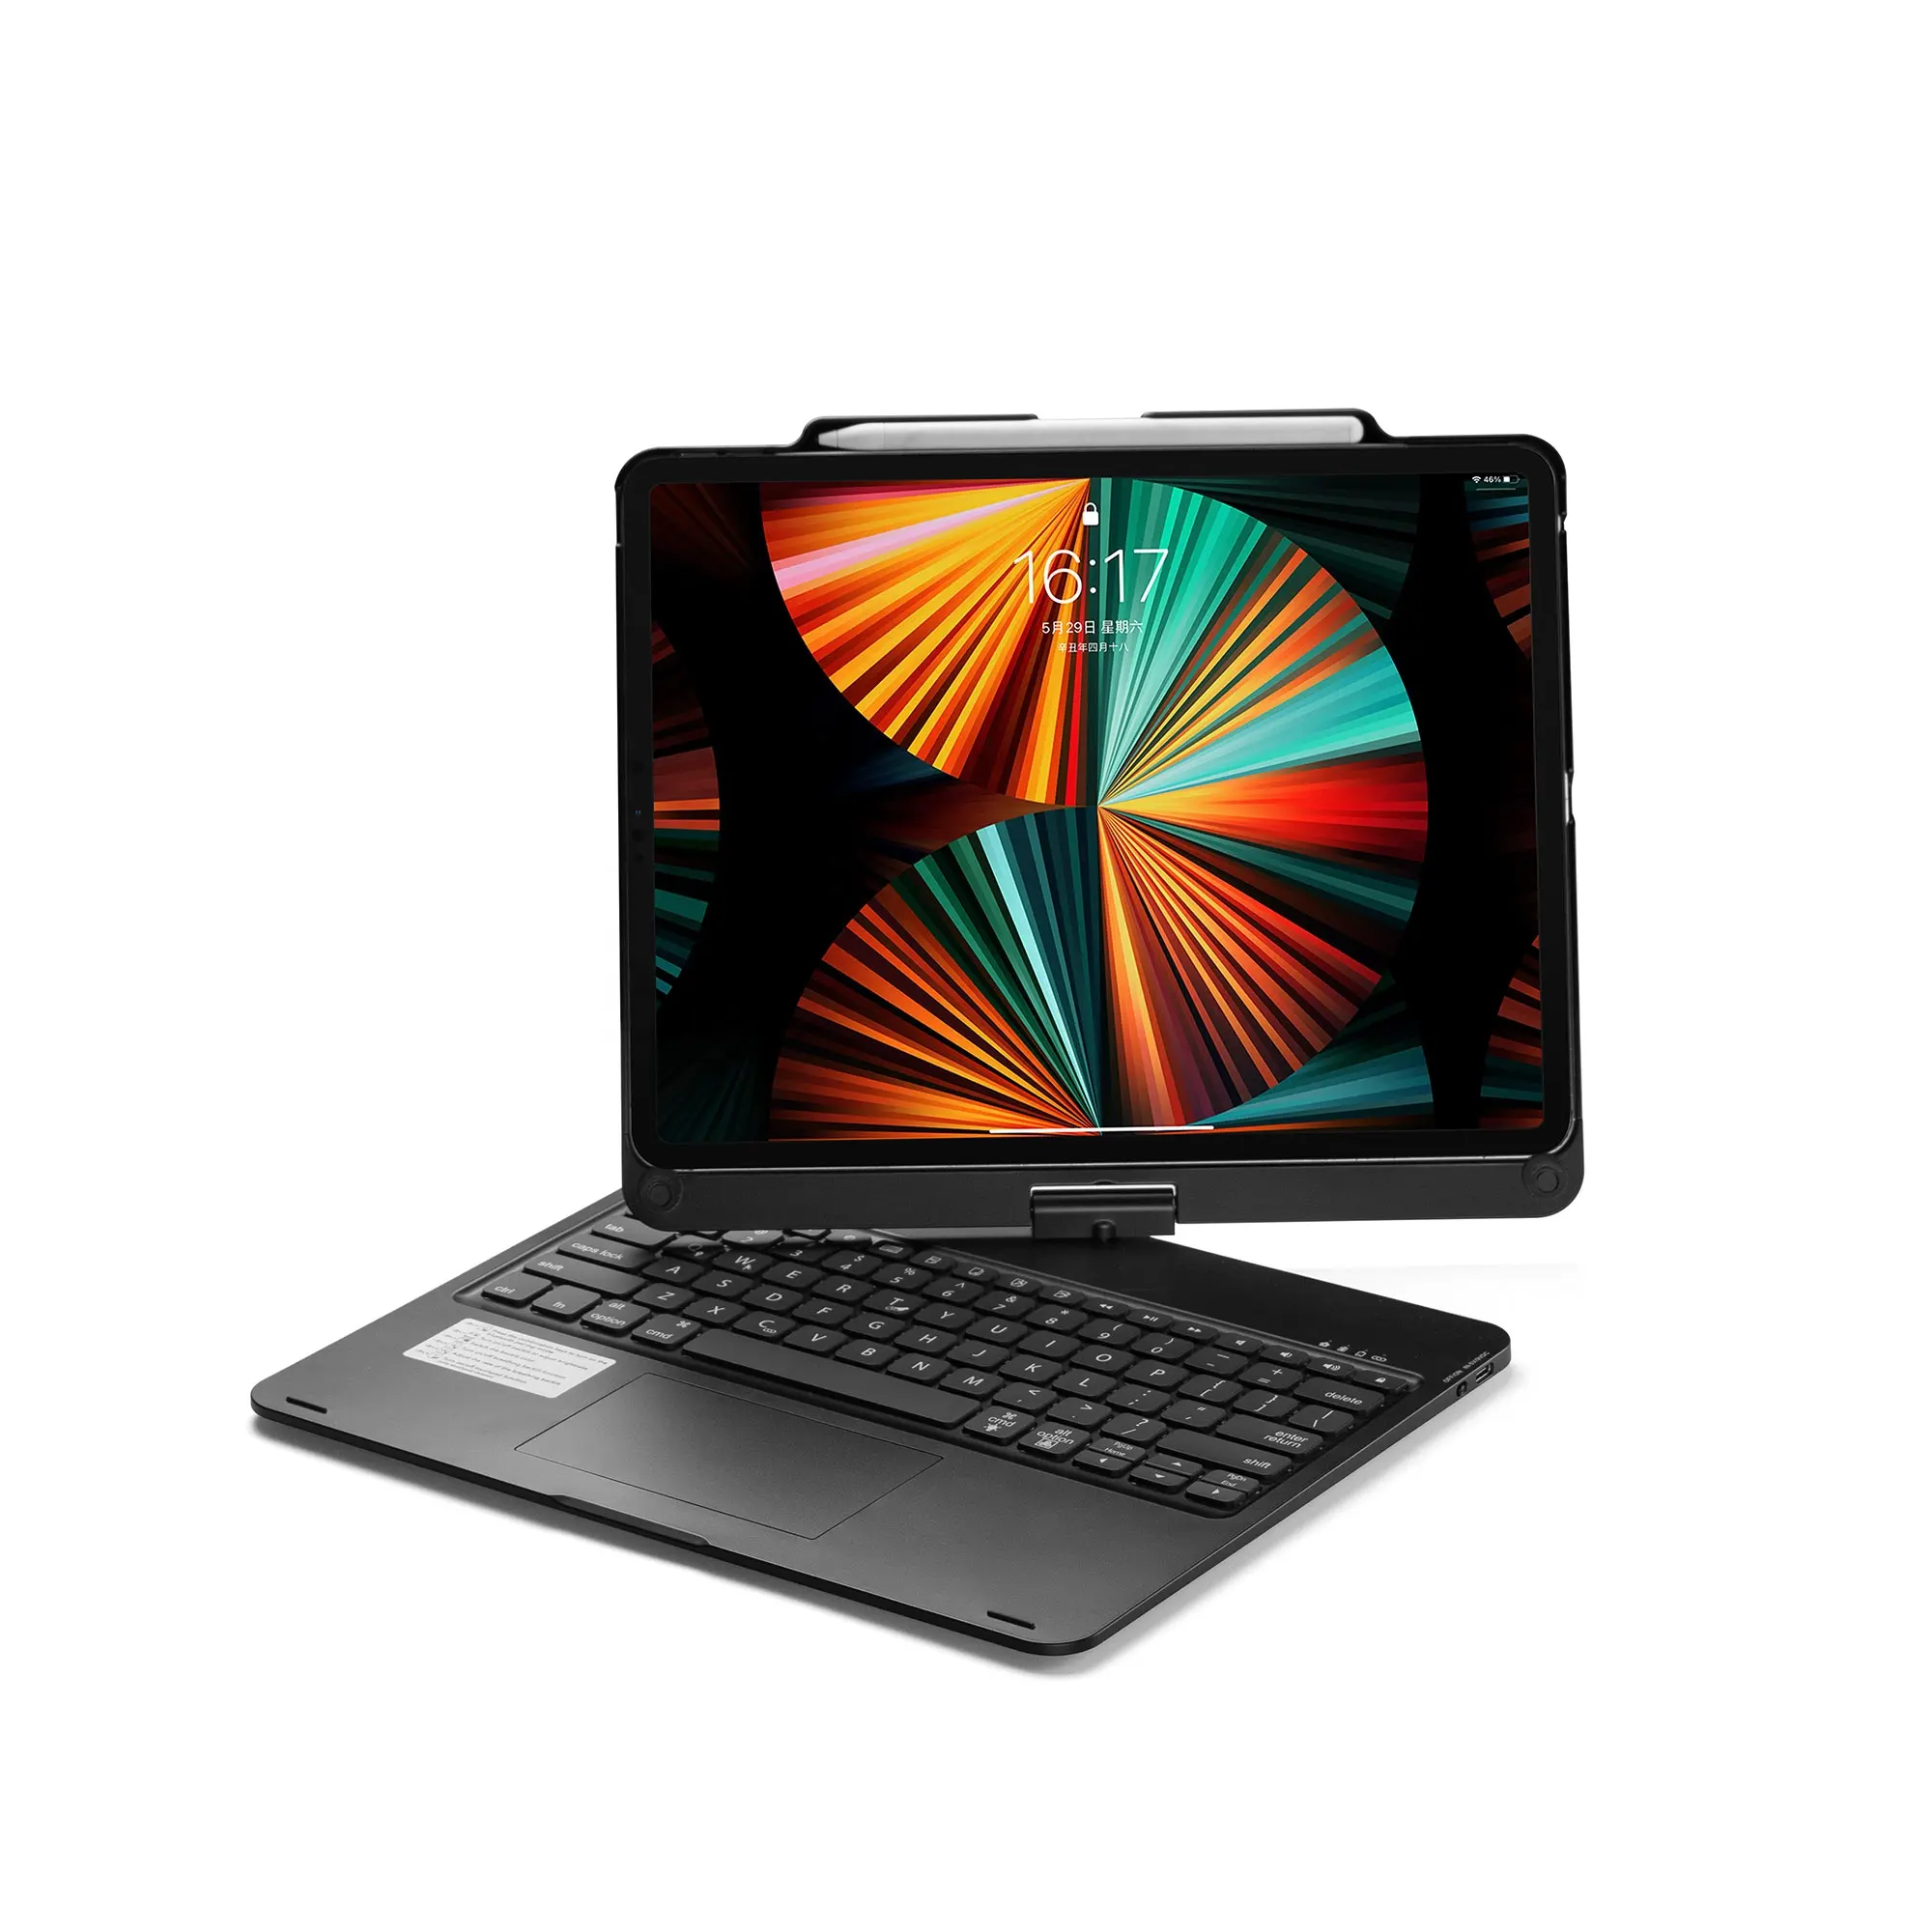 Tragbare beliebte 360-Grad-Drehung Touchpad Smart-Tastatur mit Hintergrund beleuchtung für iPad Pro 12,9 Zoll